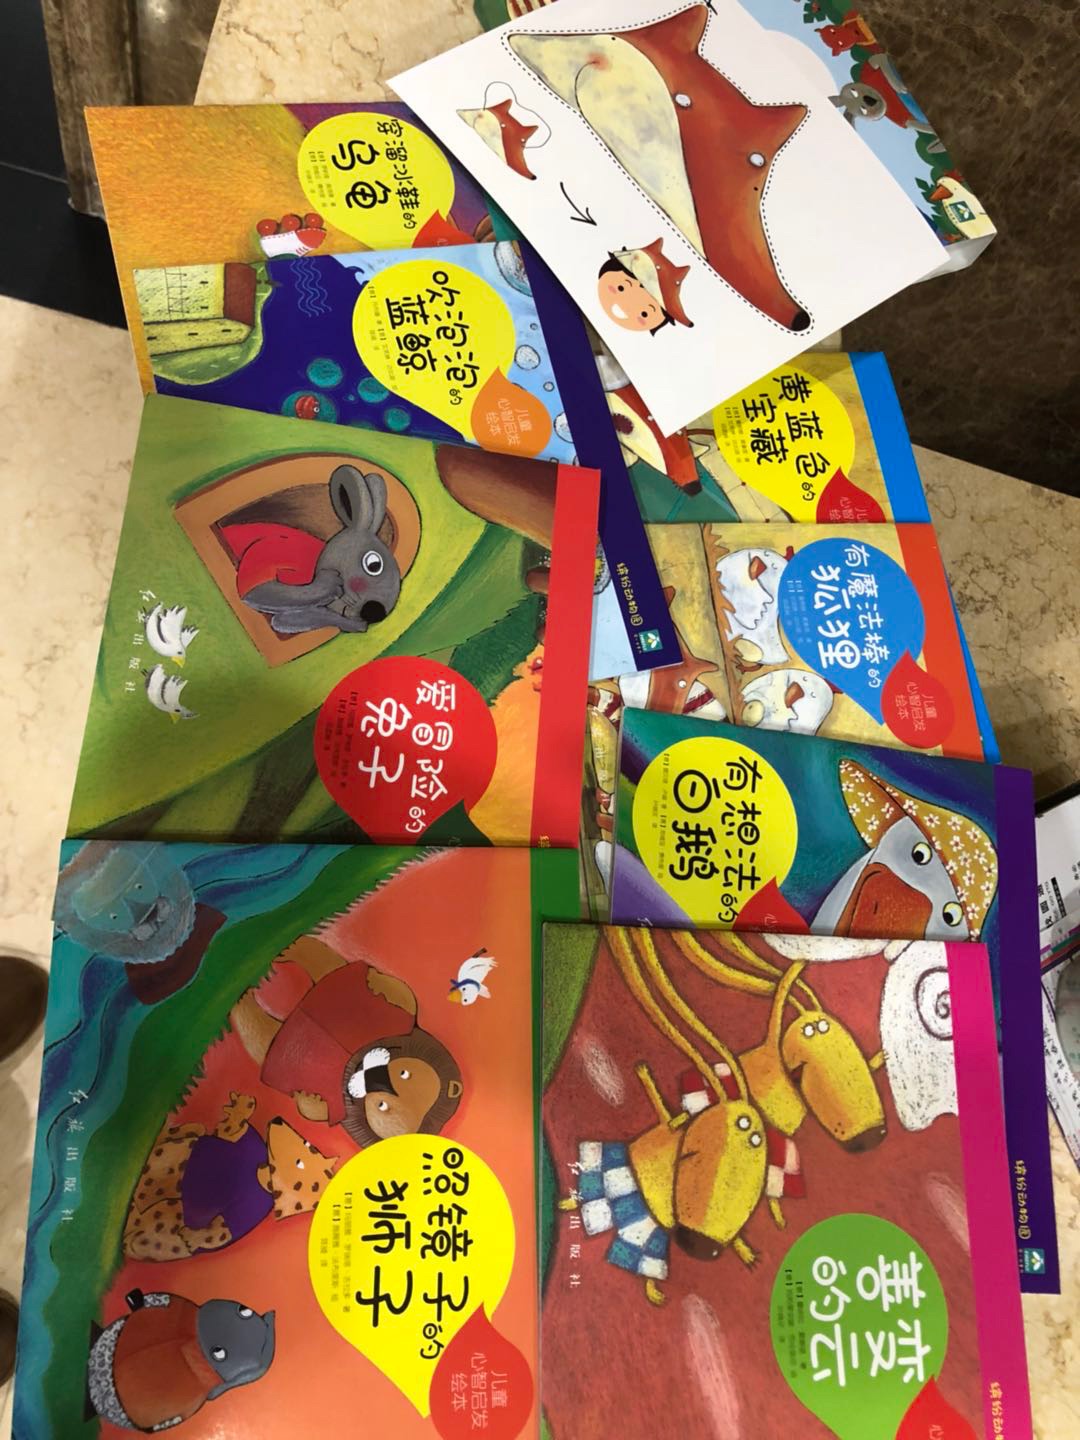 儿童绘本不错～颜色鲜冷孩子很喜欢，大人孩子共同阅读增加了互动，还有面具被让孩子自己动作能力～????～